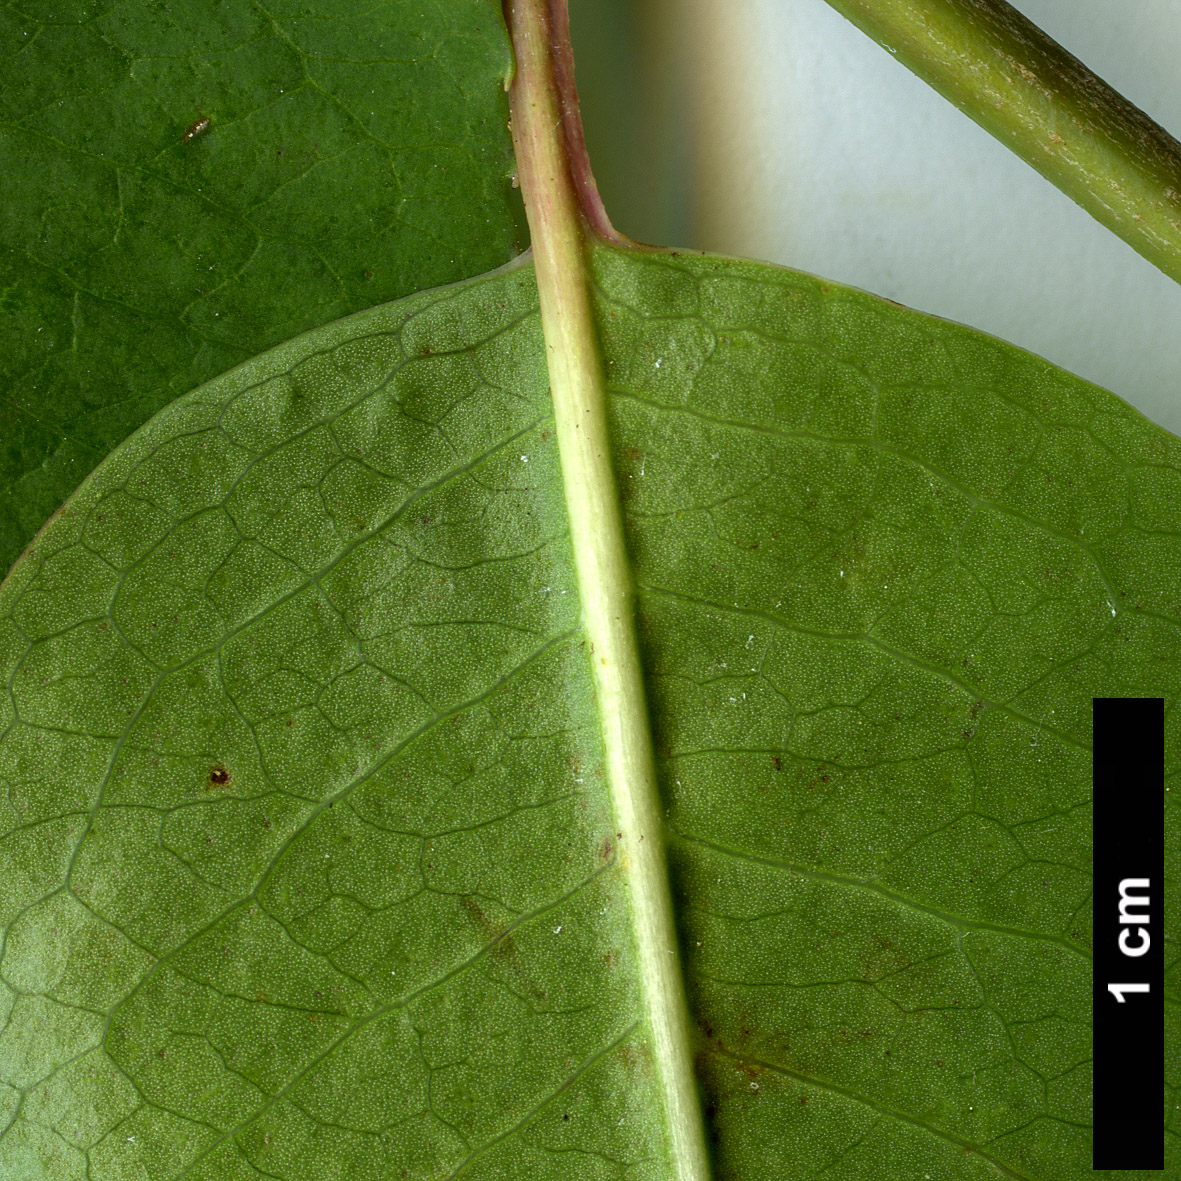 High resolution image: Family: Adoxaceae - Genus: Viburnum - Taxon: prunifolium